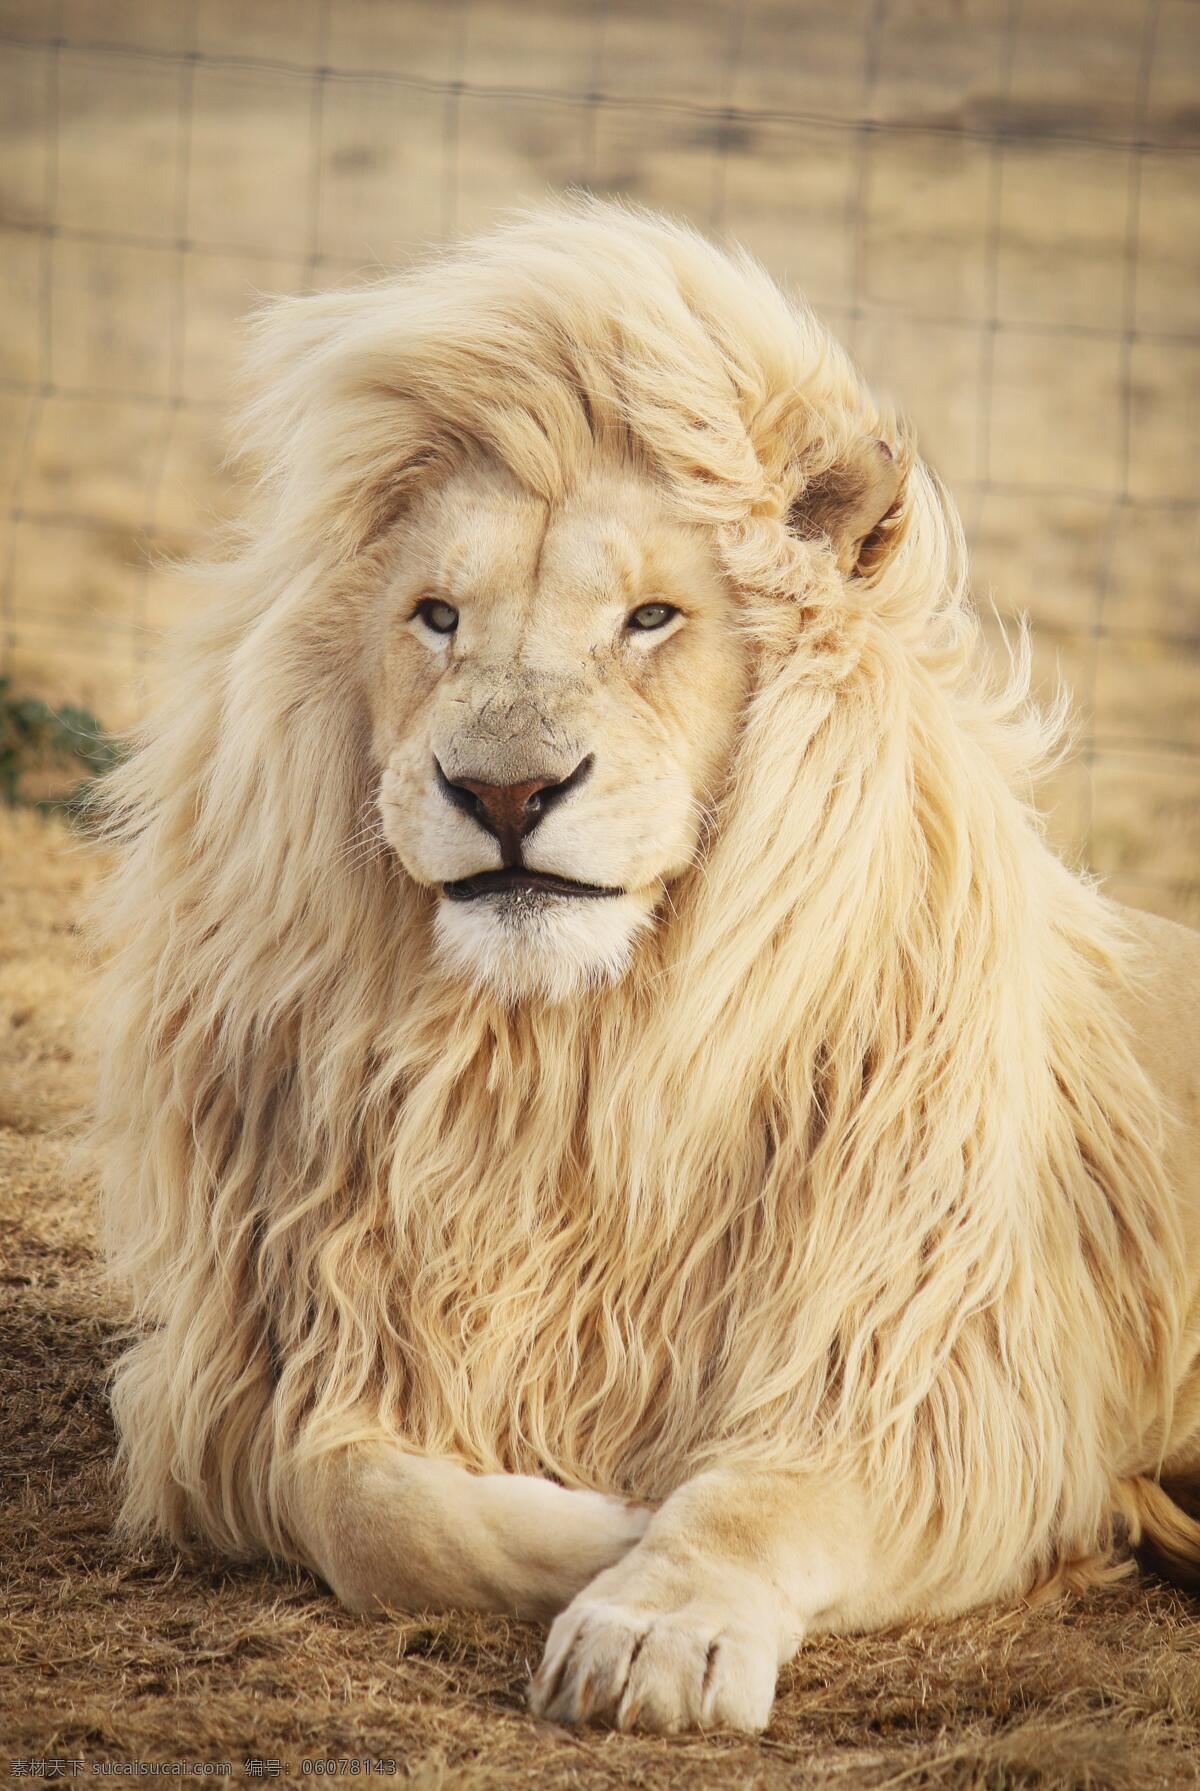 狮子 狮王 草原雄狮 猛兽 野生动物 保护动物 生物世界 设计素材 动物